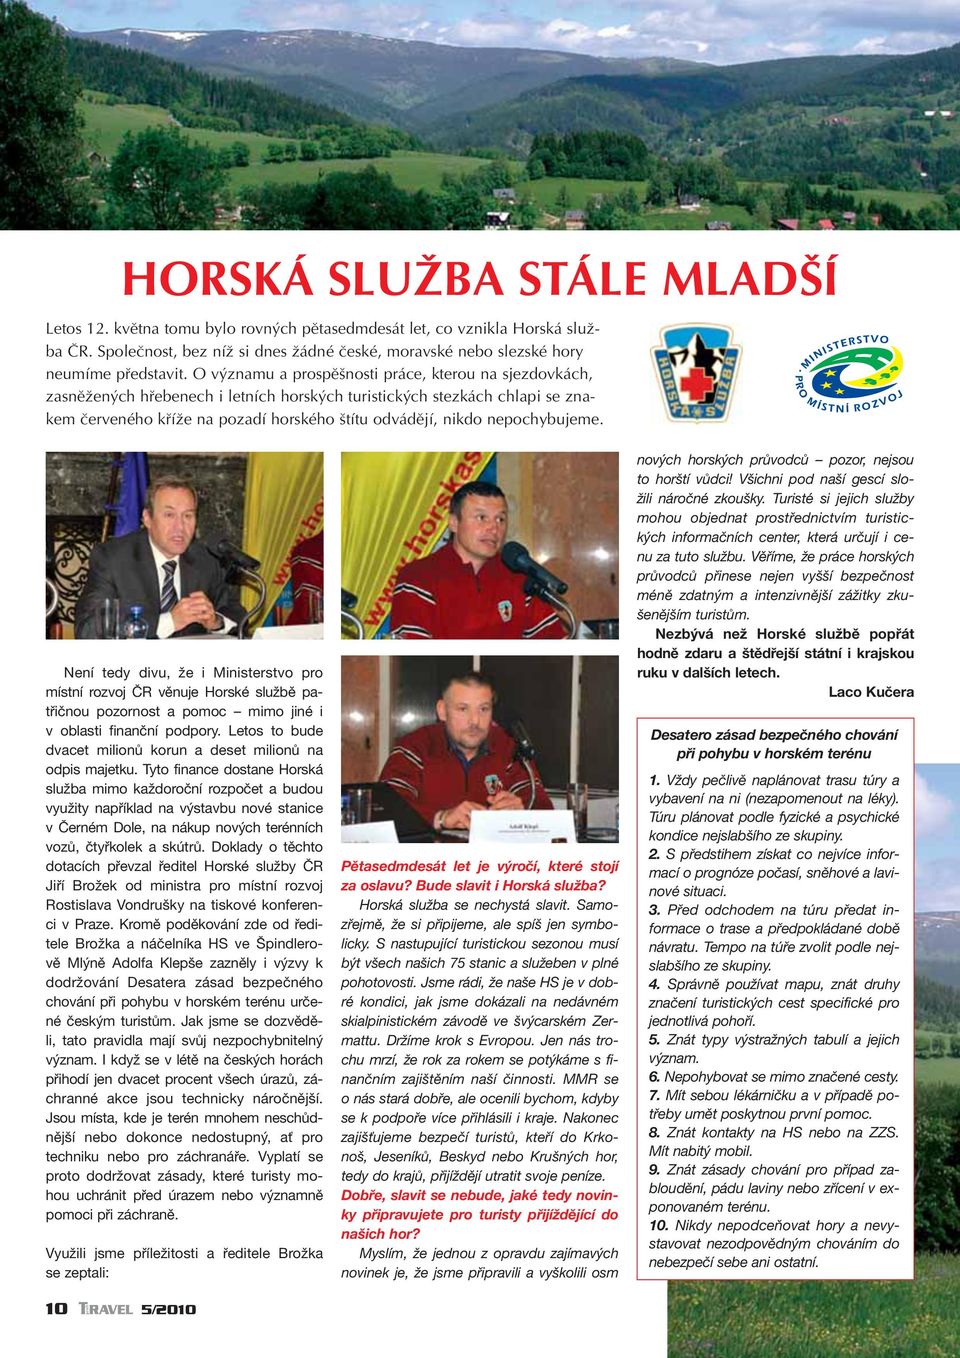 nepochybujeme. Není tedy divu, že i Ministerstvo pro místní rozvoj ČR věnuje Horské službě patřičnou pozornost a pomoc mimo jiné i v oblasti finanční podpory.